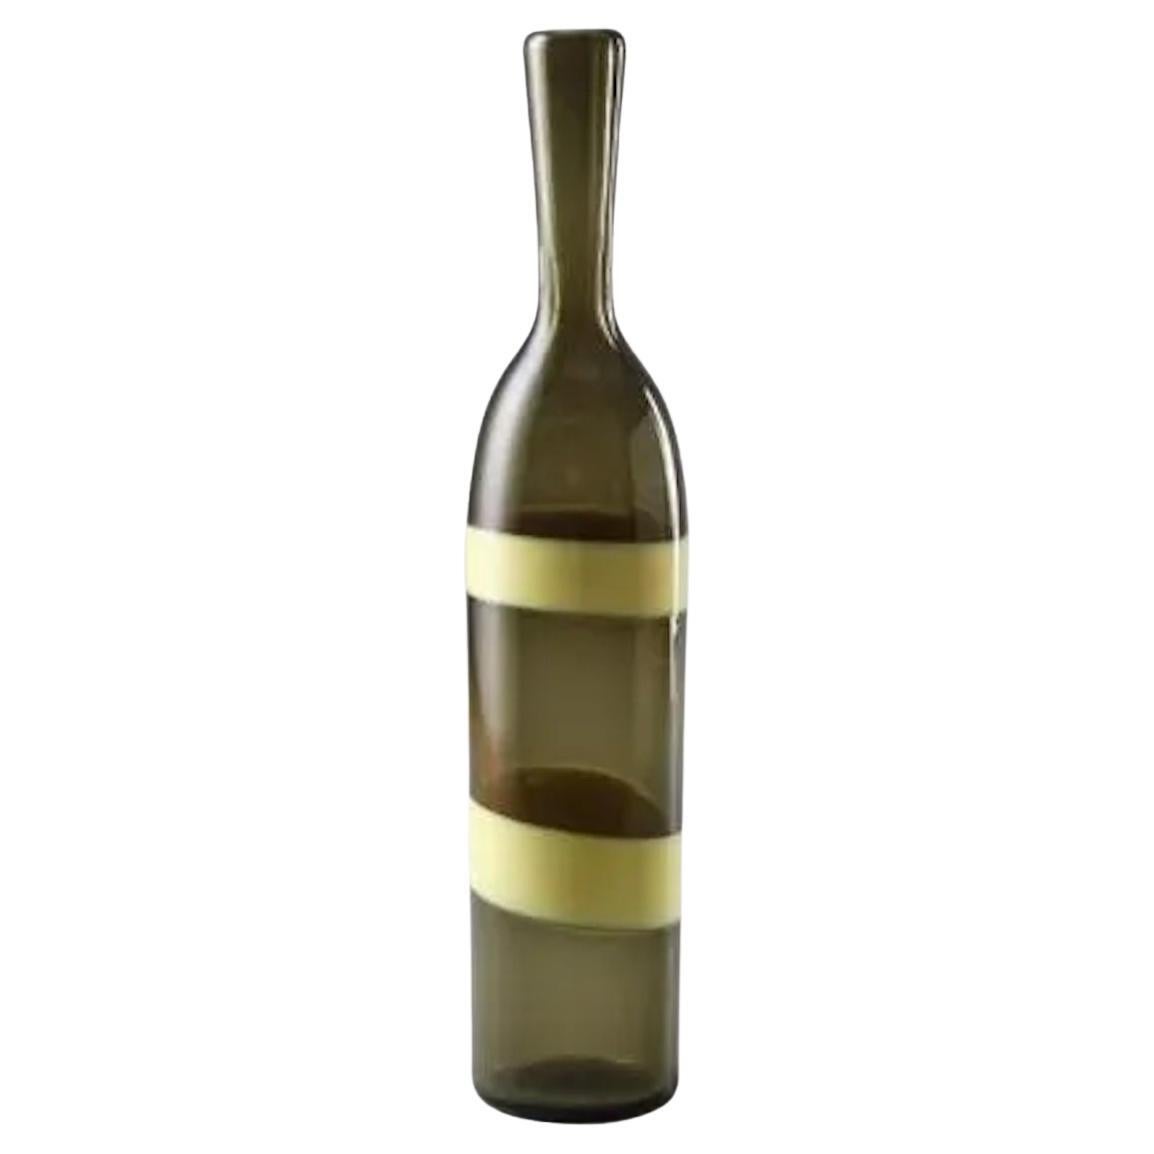 Gelbe und grüne Glasflasche von Fulvio Bianconi für Venini.